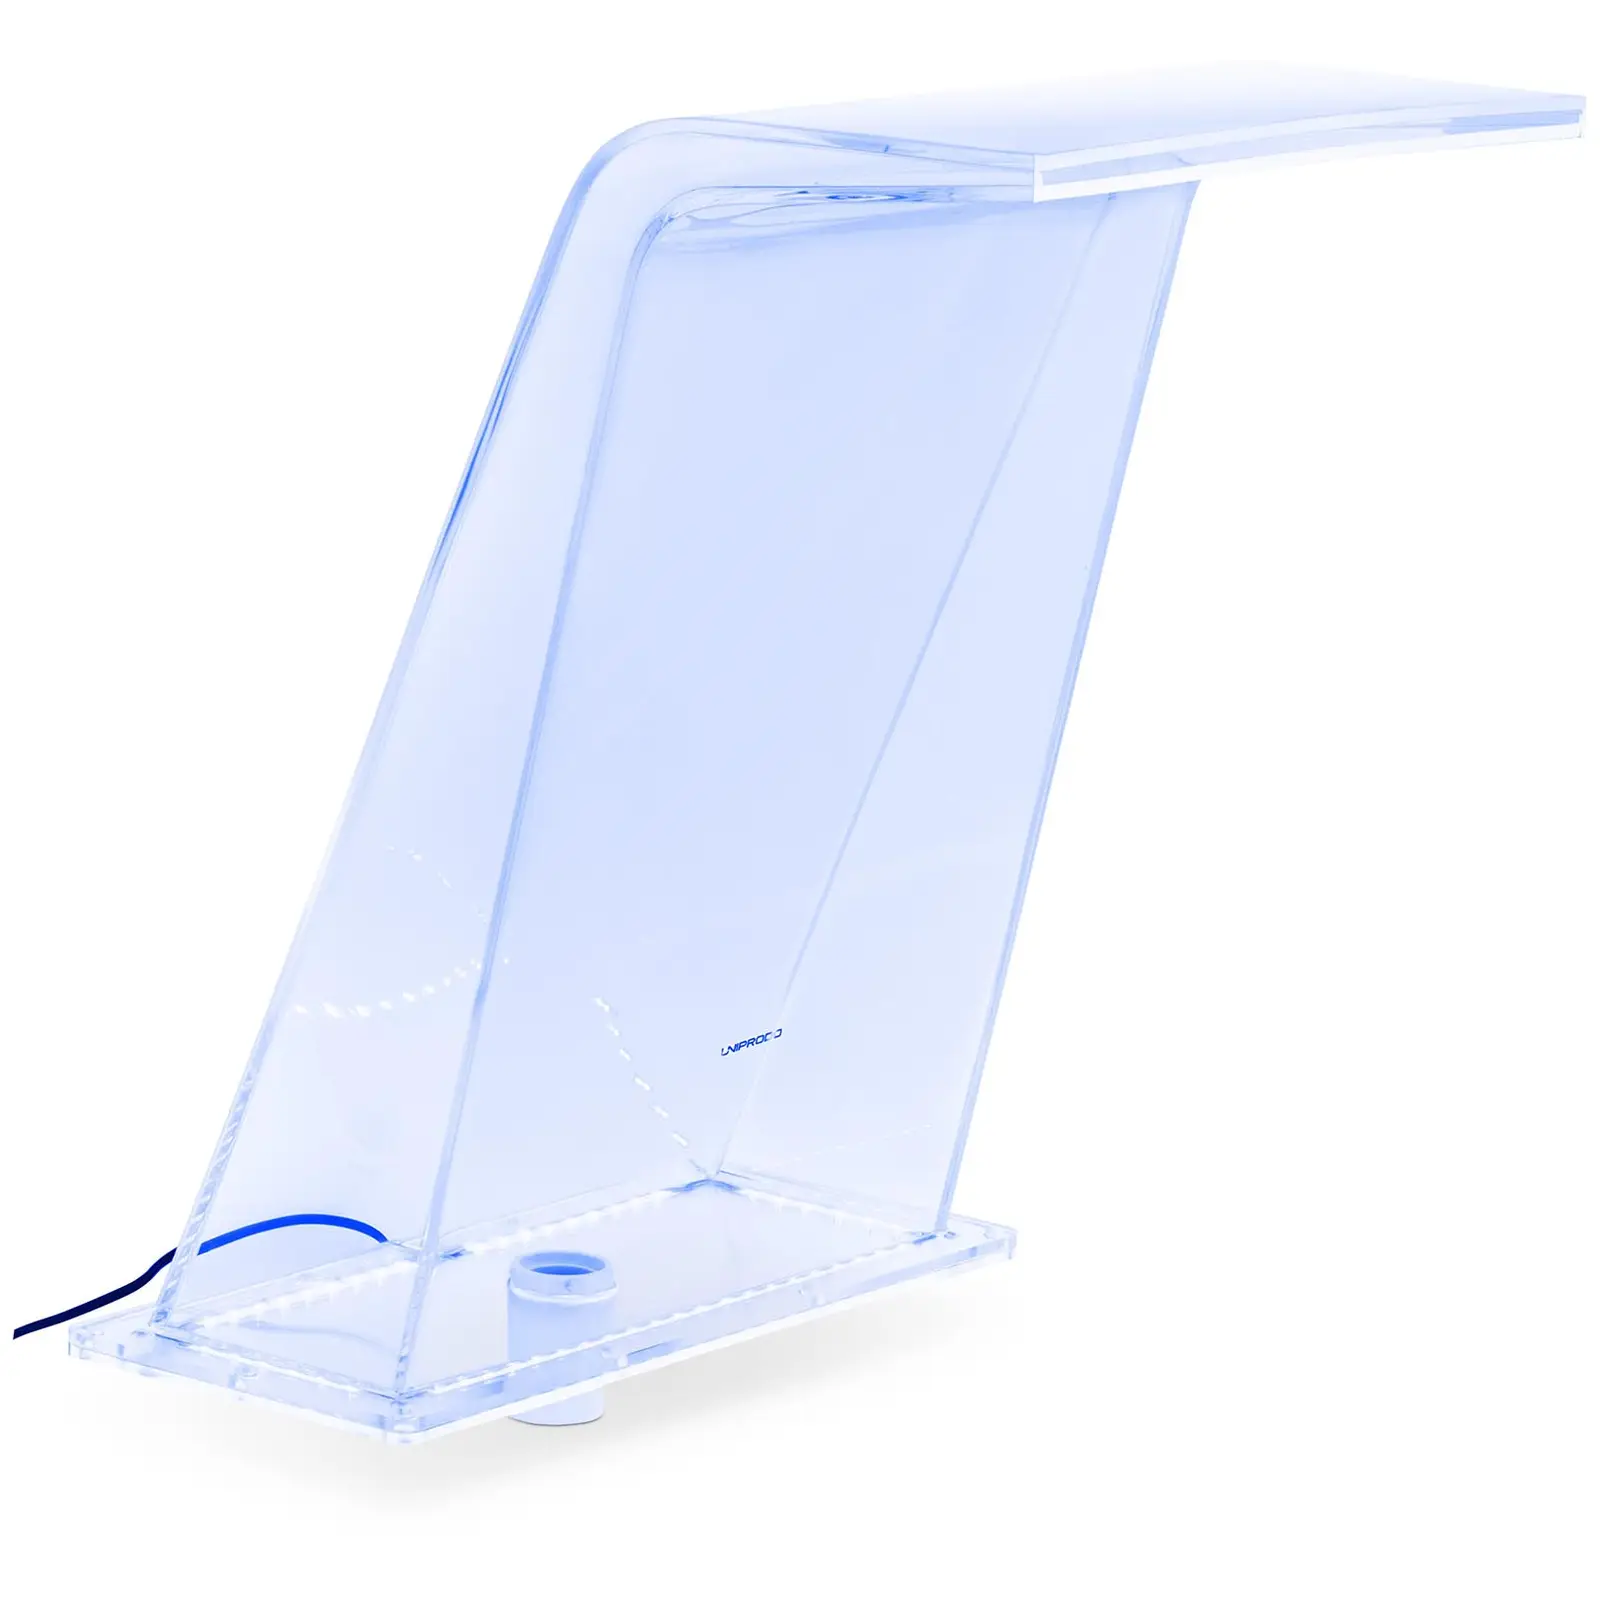 Surge shower - 45 cm - LED lighting - Blue / White